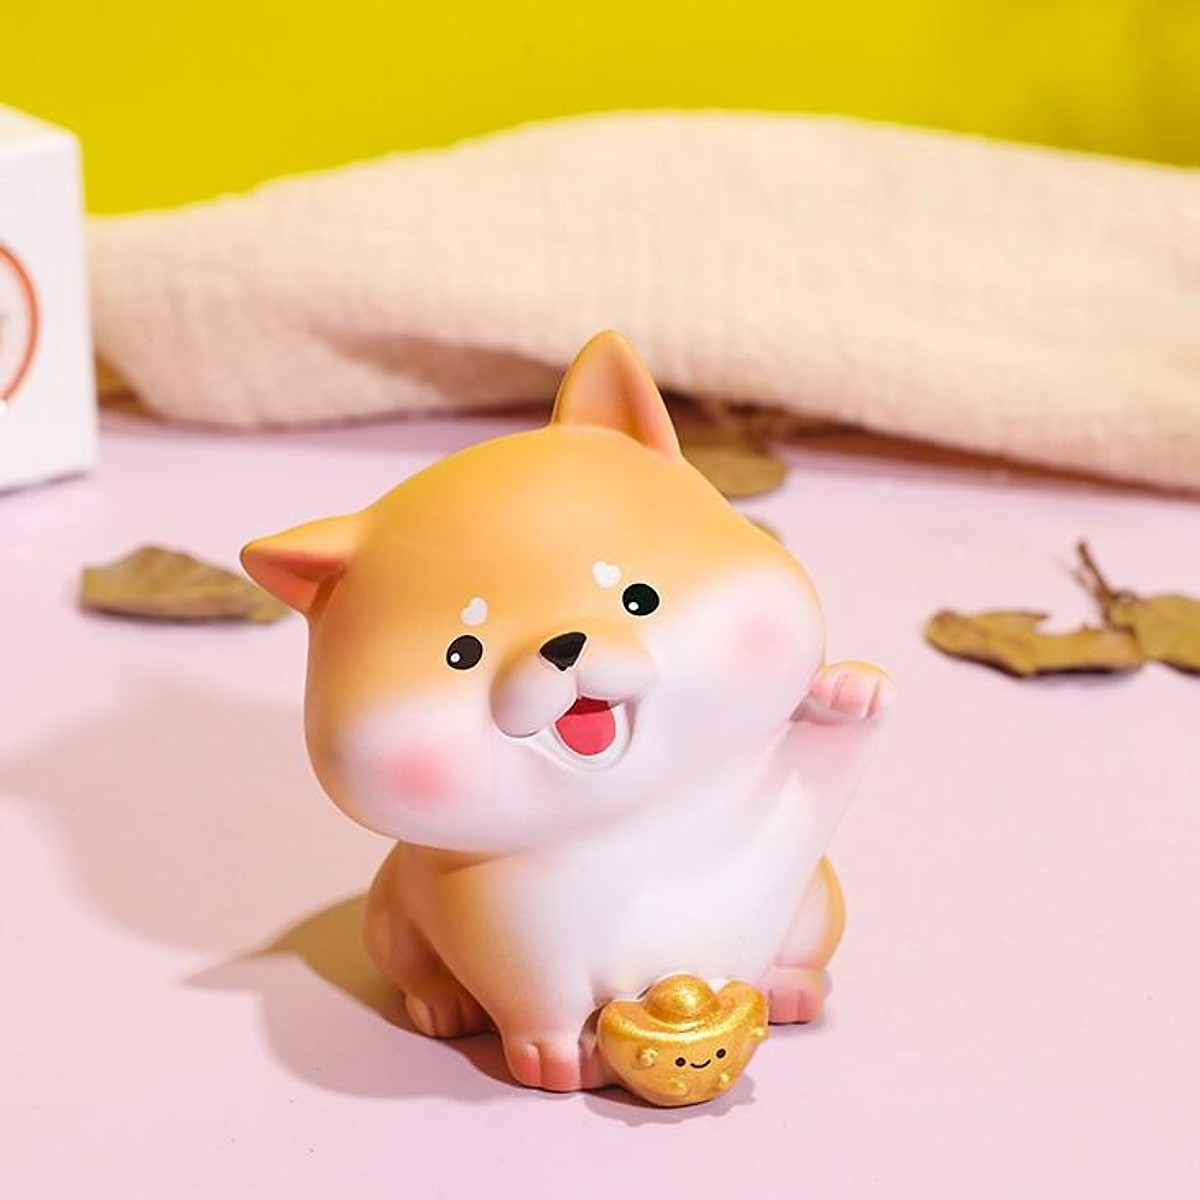 Mô hình cún Bingo chó Shiba dễ thương sẽ đem lại nụ cười và niềm vui cho mọi người yêu thích chó. Với kiểu dáng độc đáo và tỉ mỉ trong từng chi tiết, chiếc mô hình là một món quà tặng ý nghĩa. Hãy đến và khám phá thêm về mô hình cún Bingo chó Shiba này.